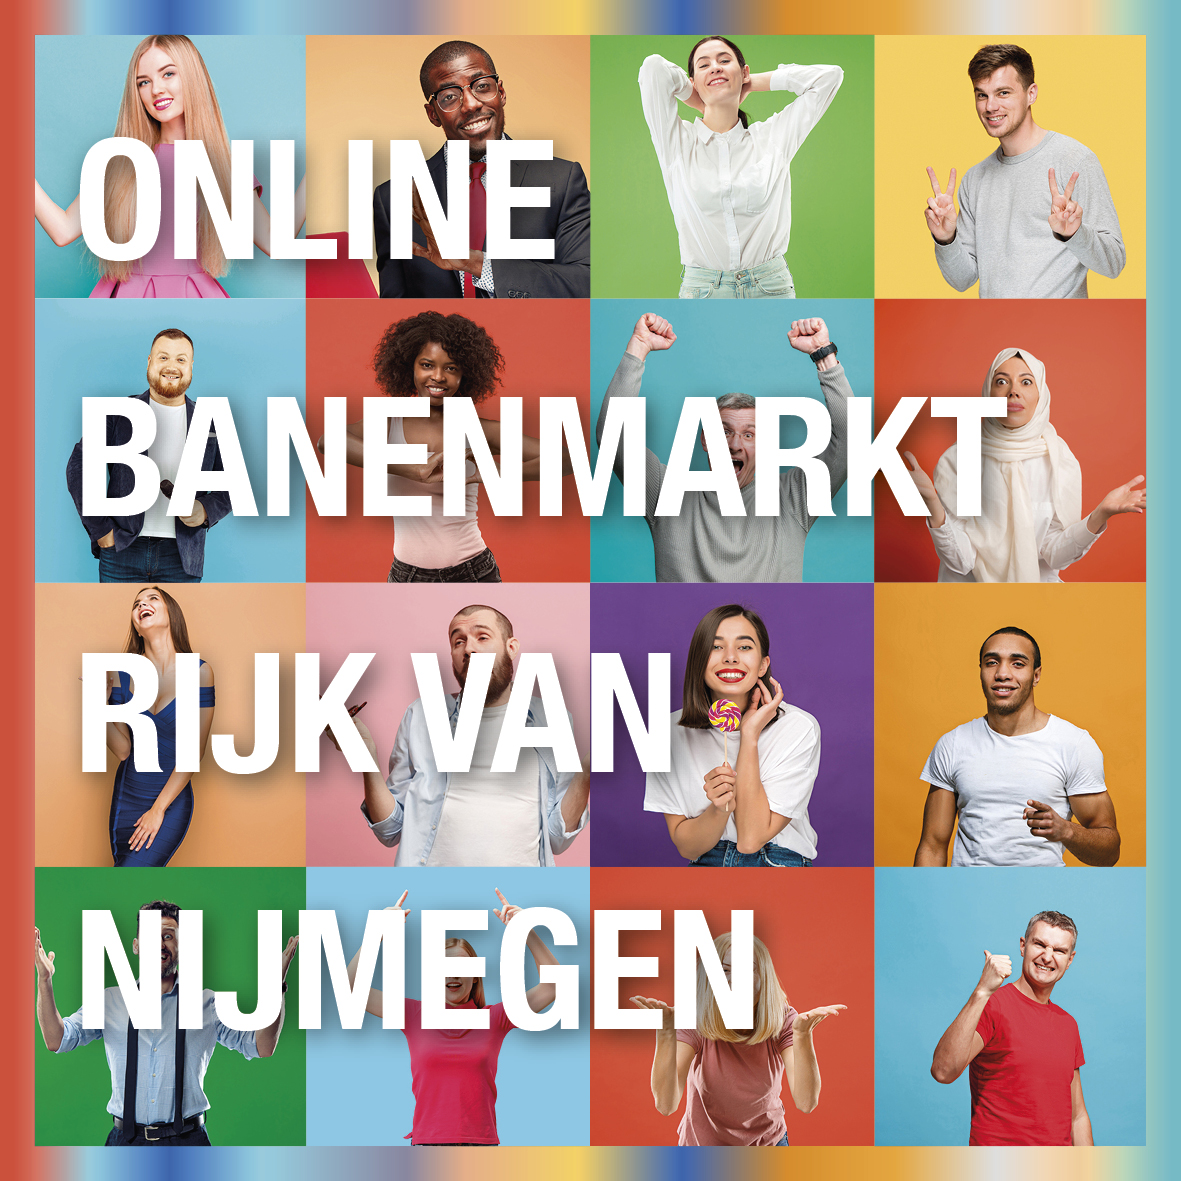 Online Banenmarkt Rijk van Nijmegen